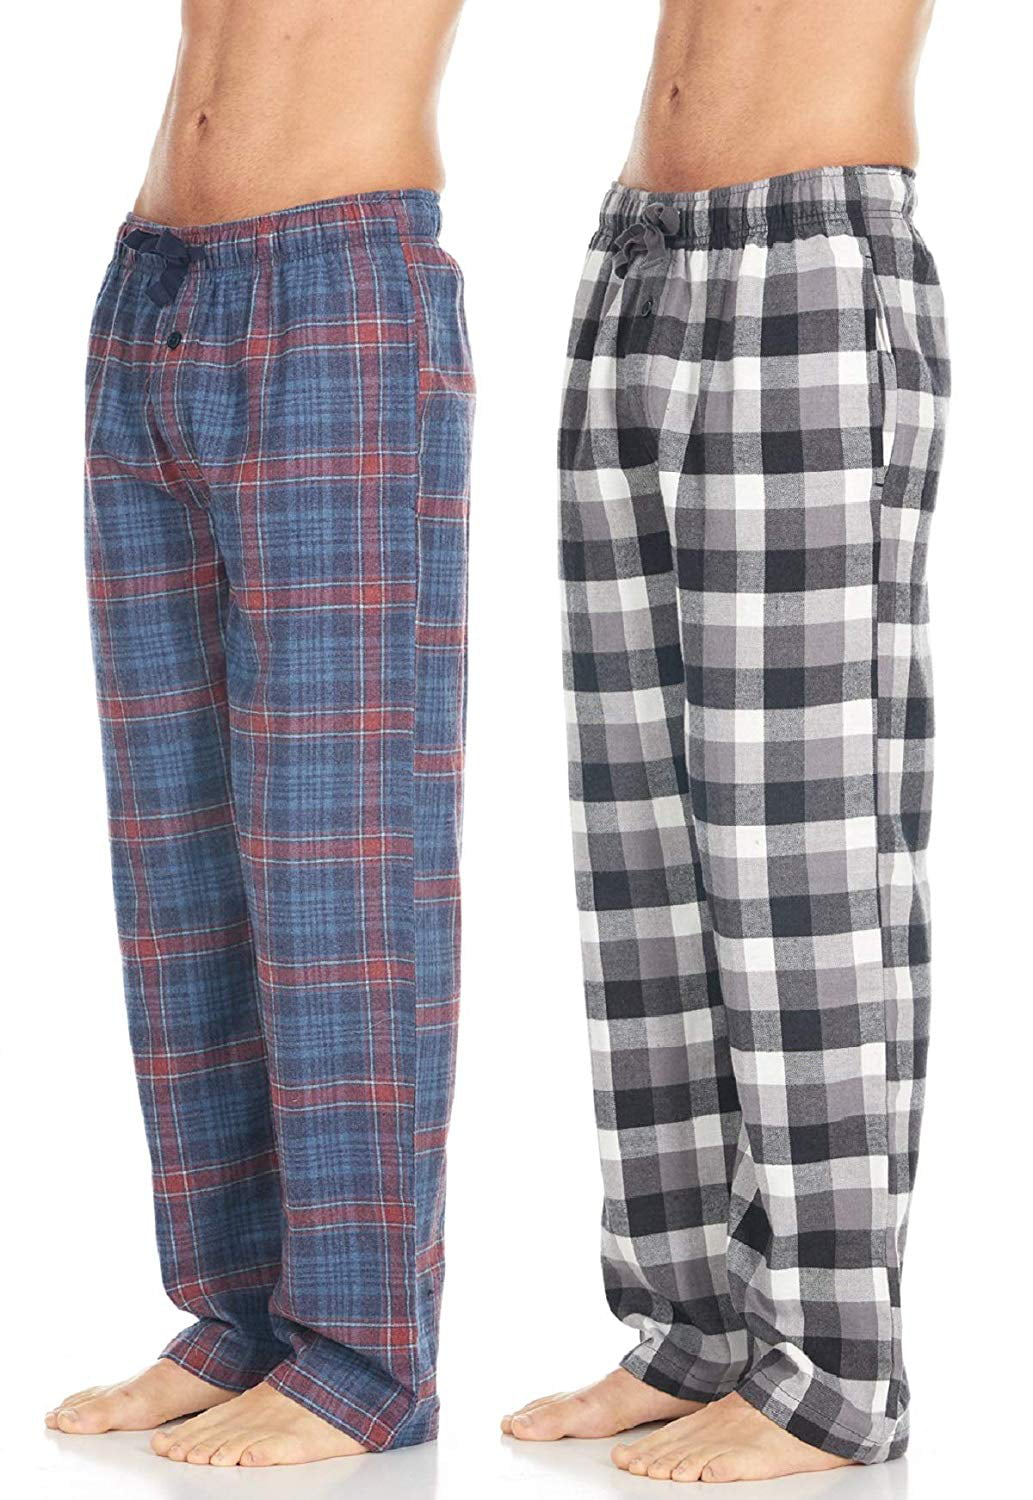 Daresay - Men's Cotton Super-Soft Flannel Plaid Pajama Pants/Lounge ...